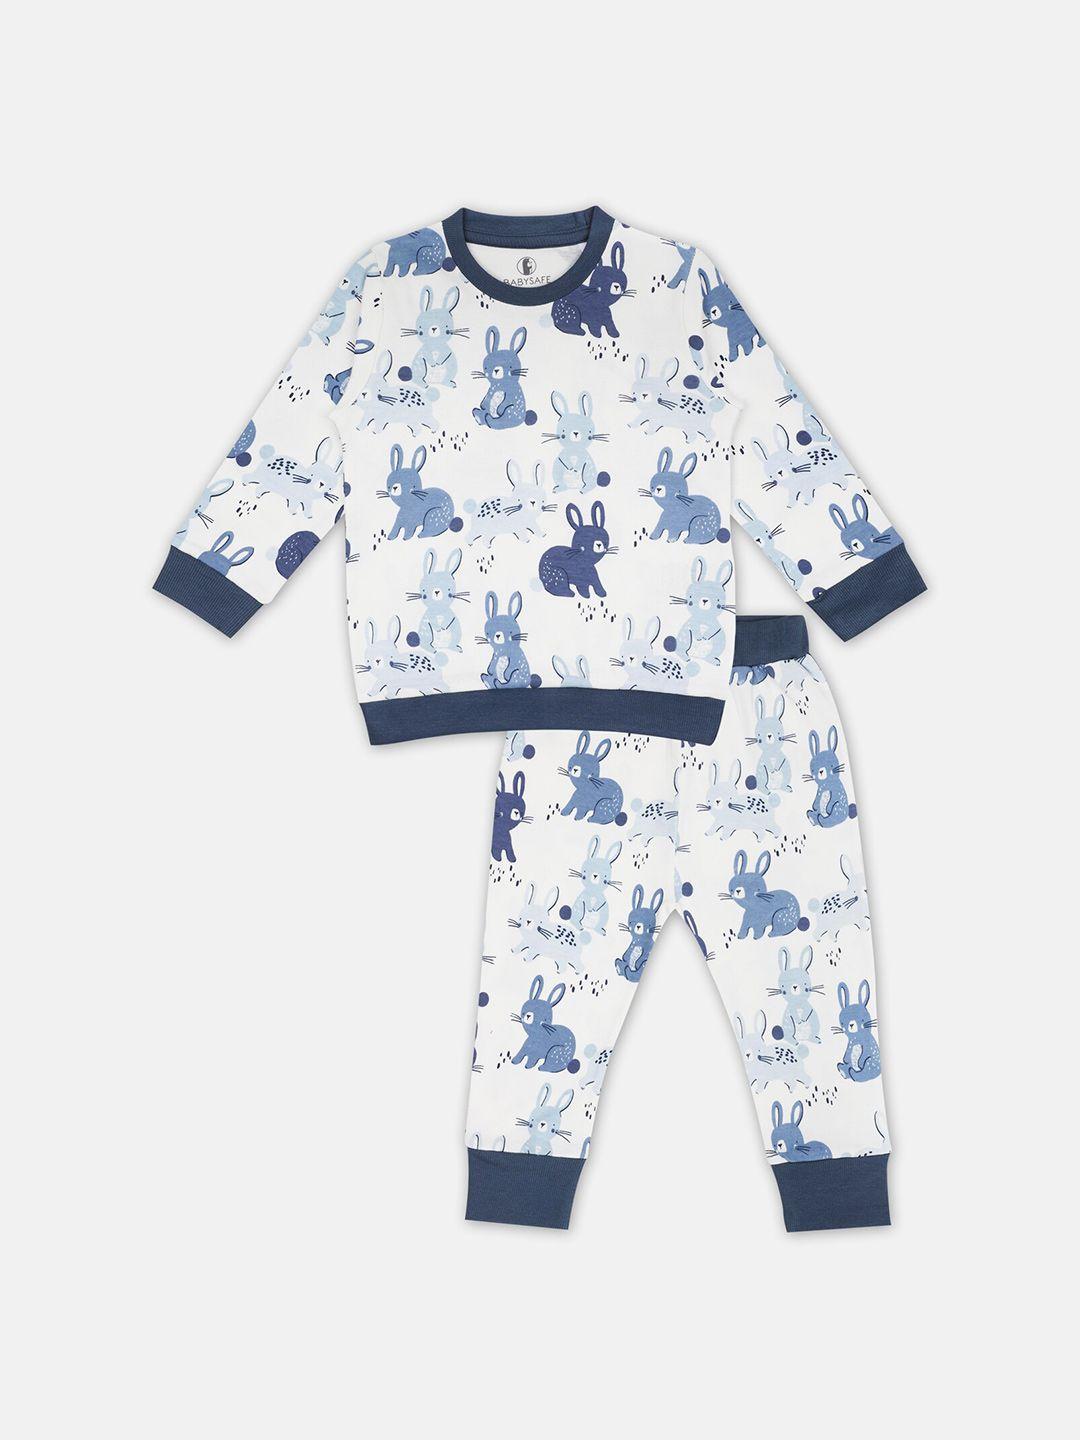 babysafe boys white & blue printed top with pyjamas